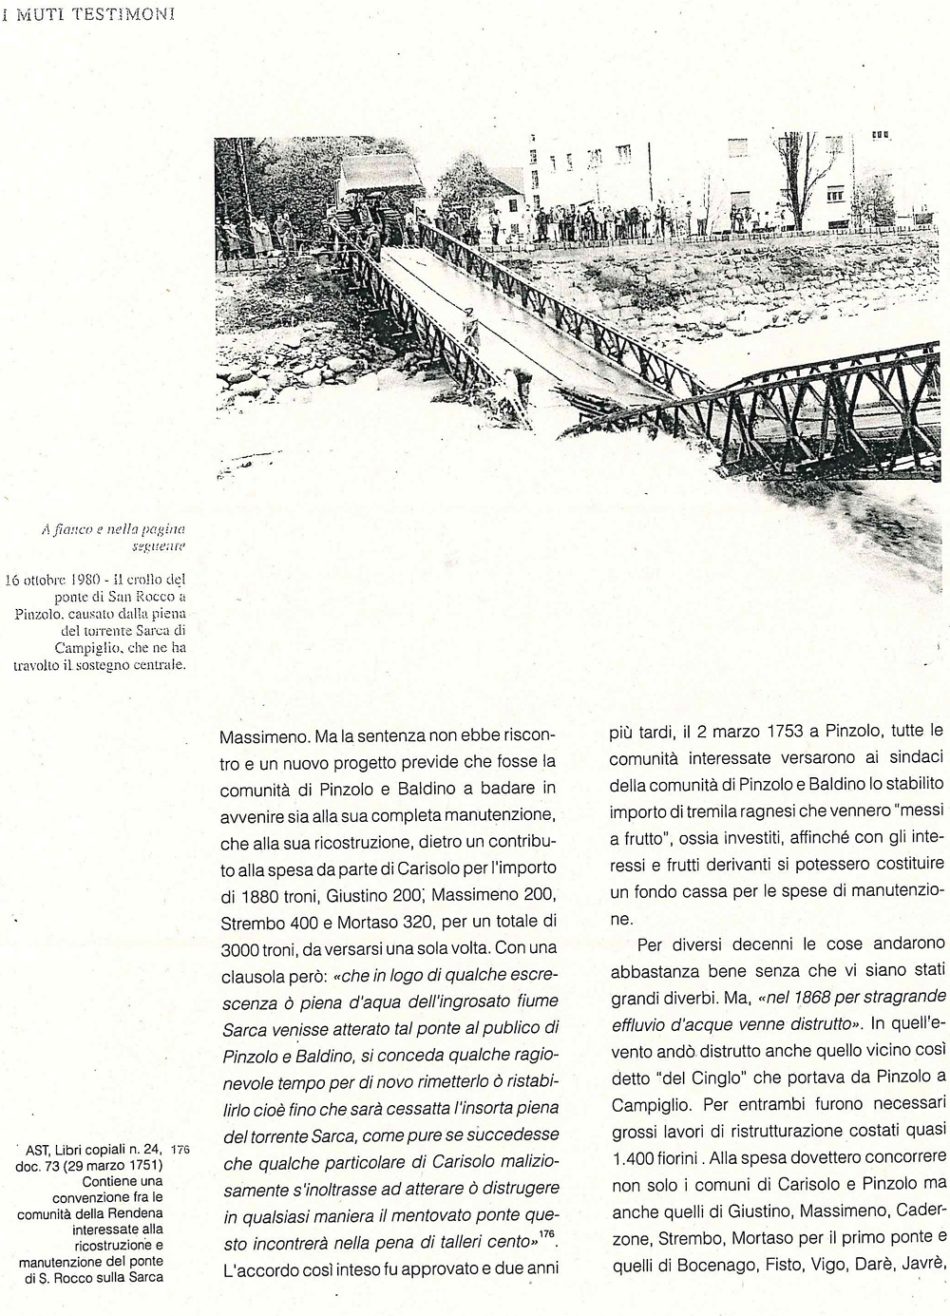 La storia del ponte di san Rocco